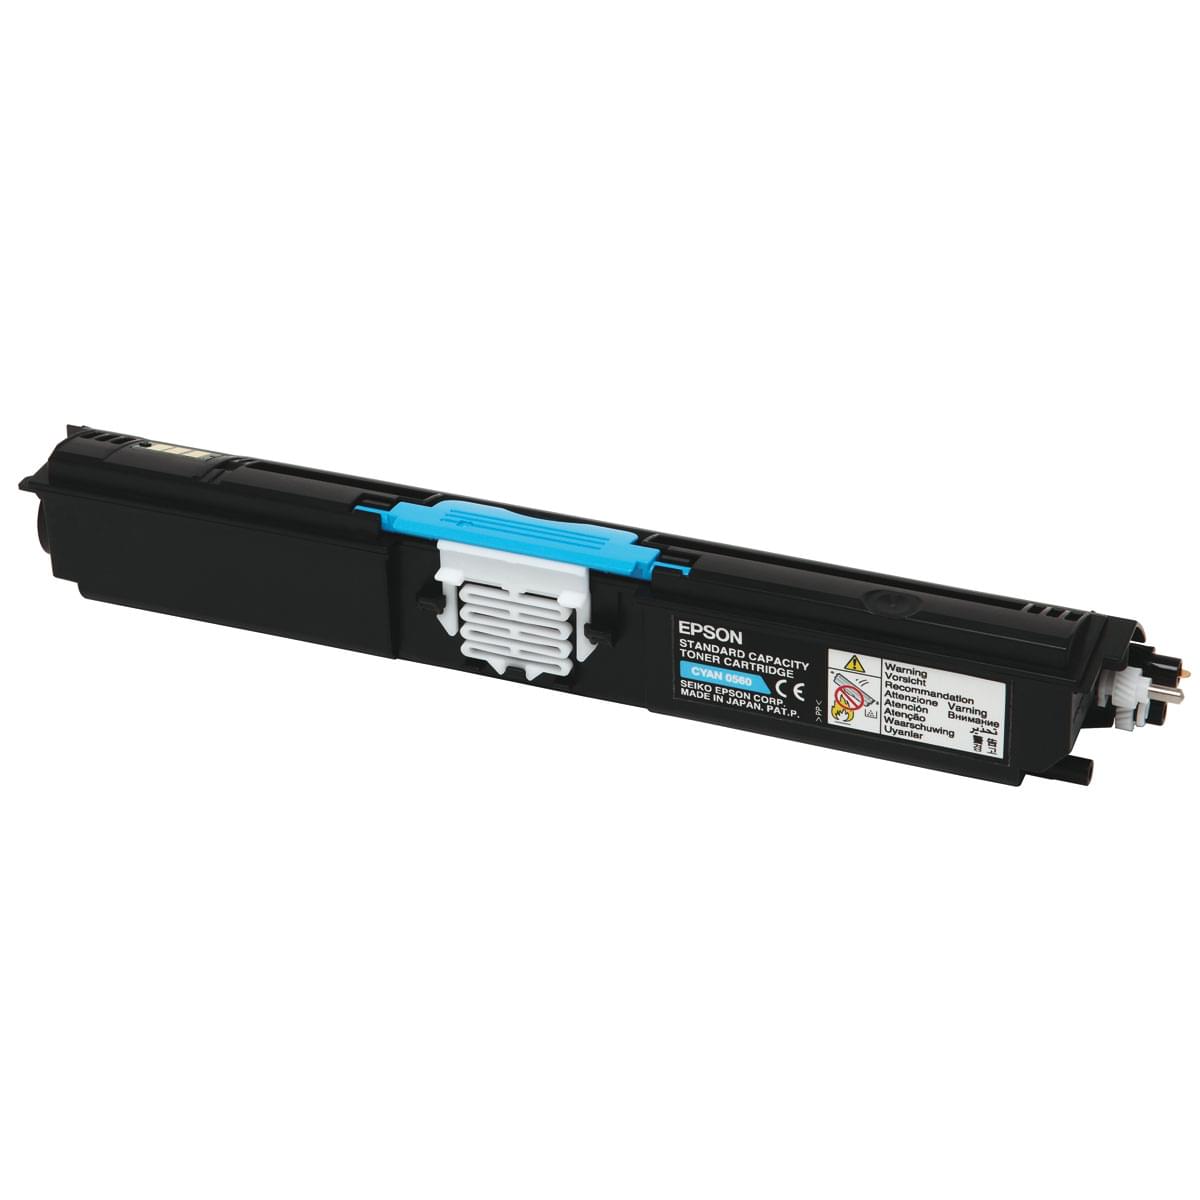 Toner Cyan 1600p - C13S050560 pour imprimante Laser Epson - 0